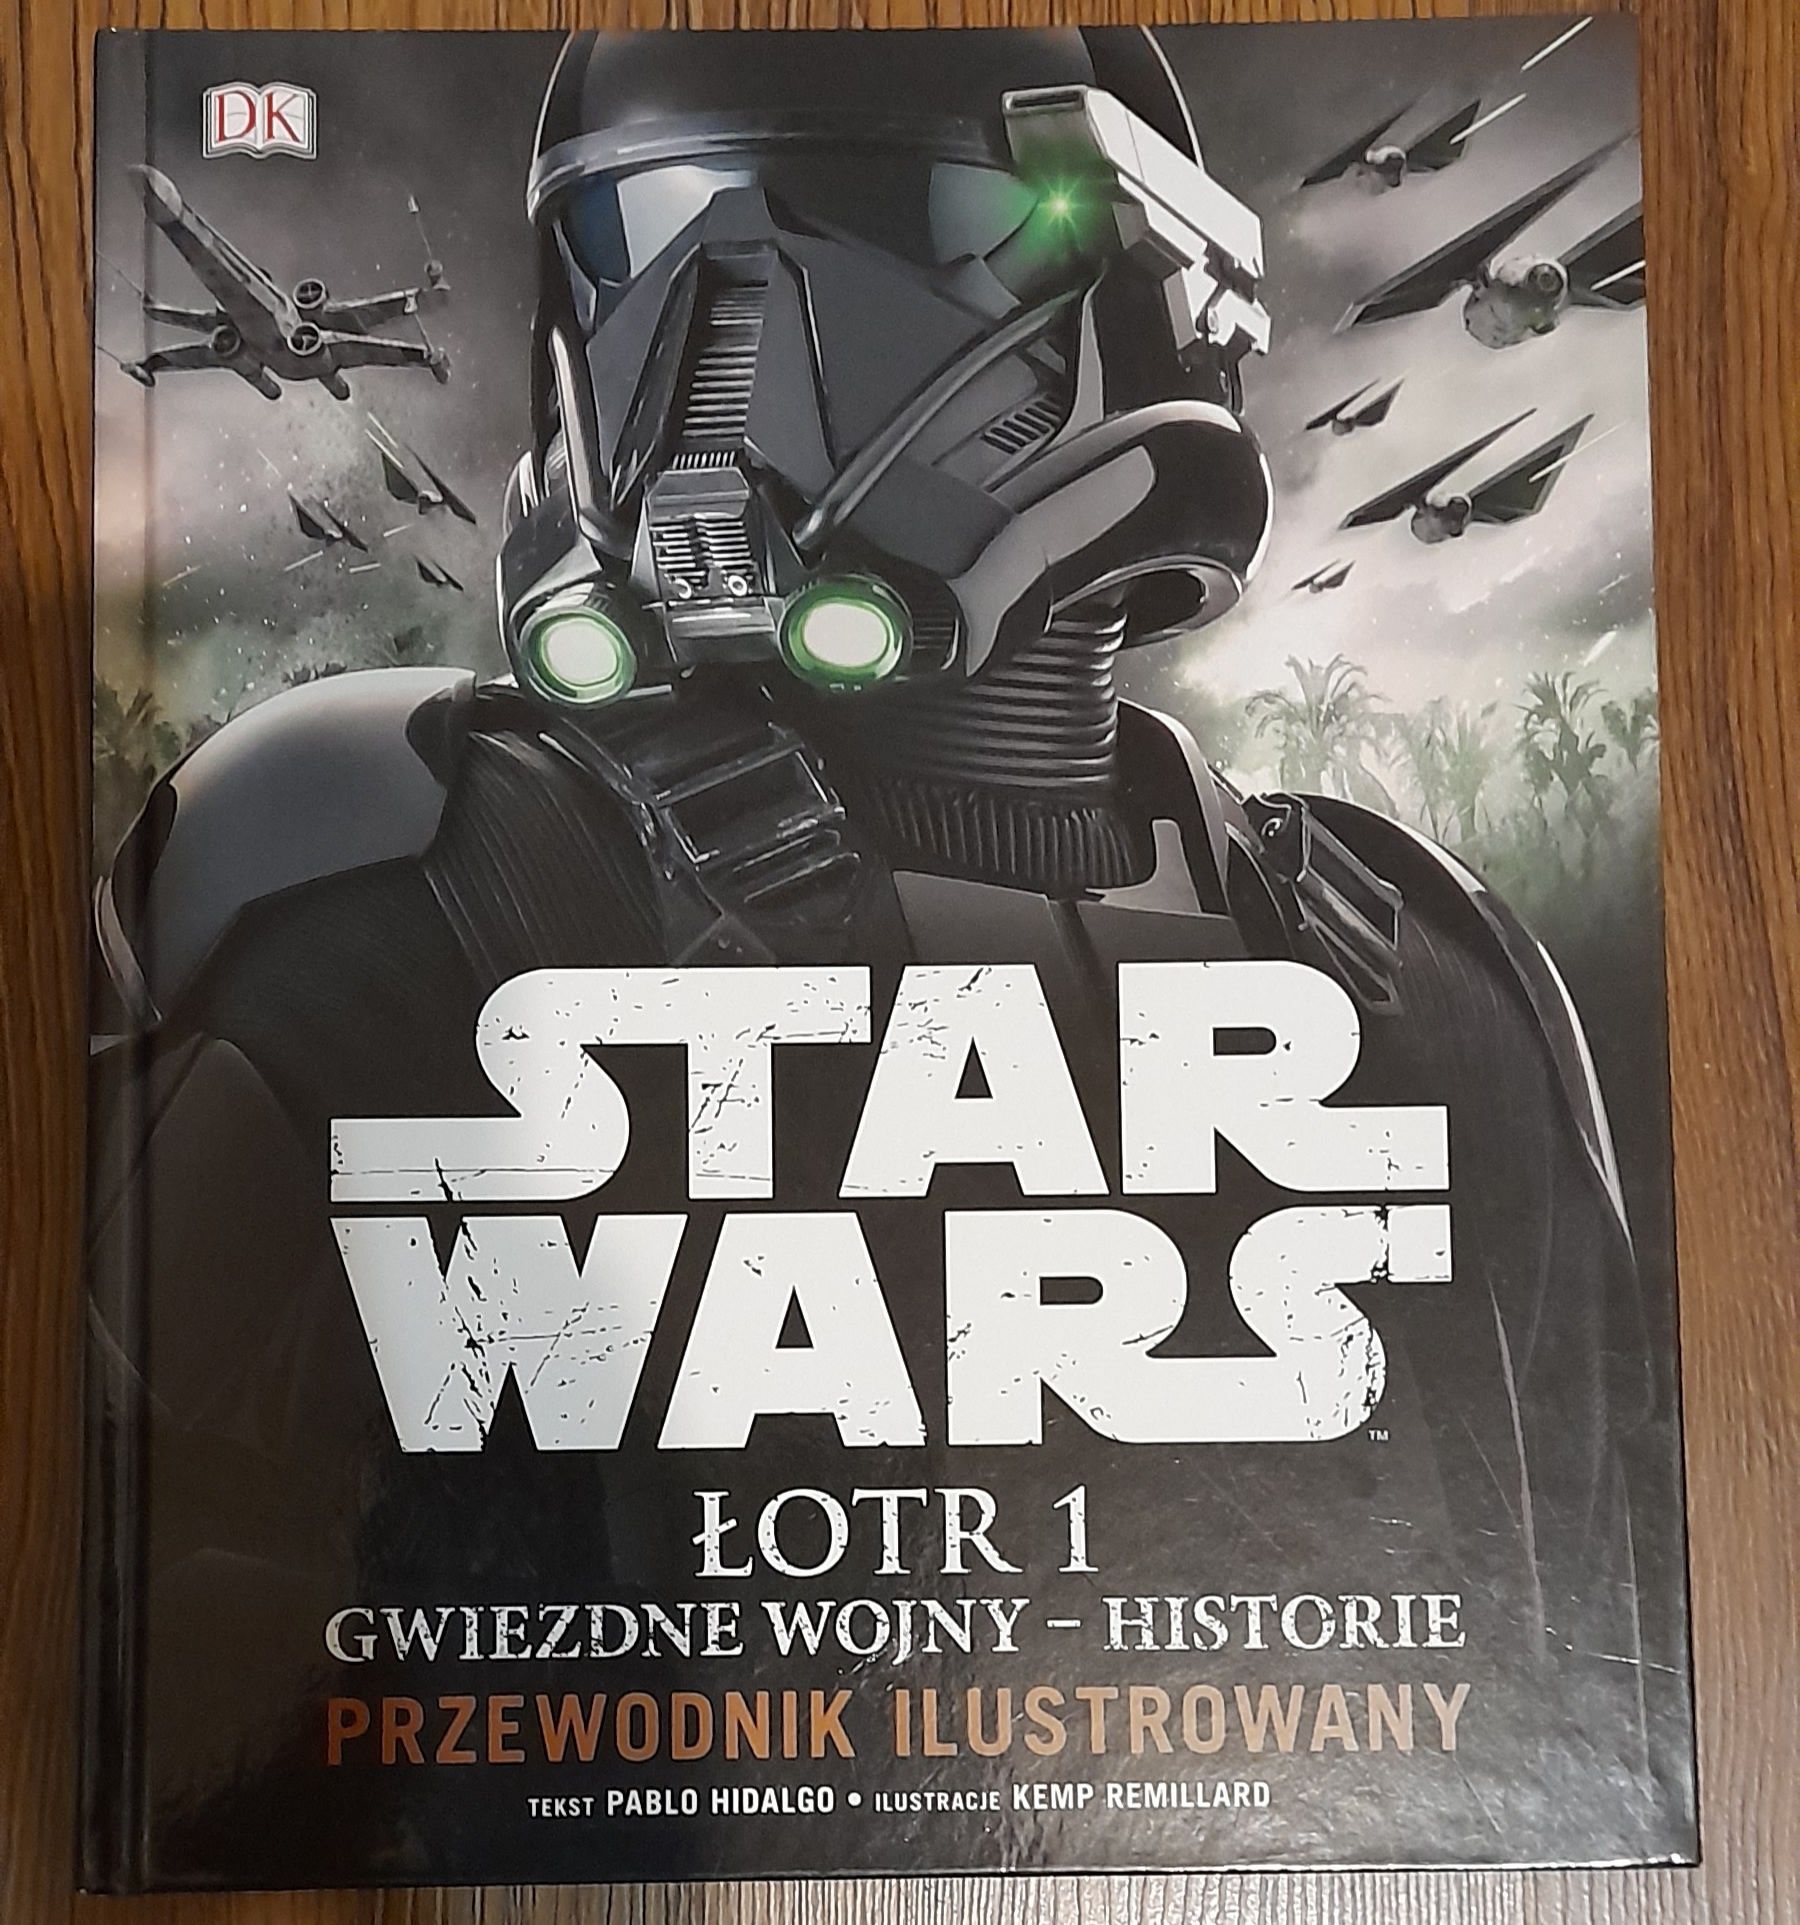 Star Wars. Łotr 1 Gwiezdne wojny - historie.